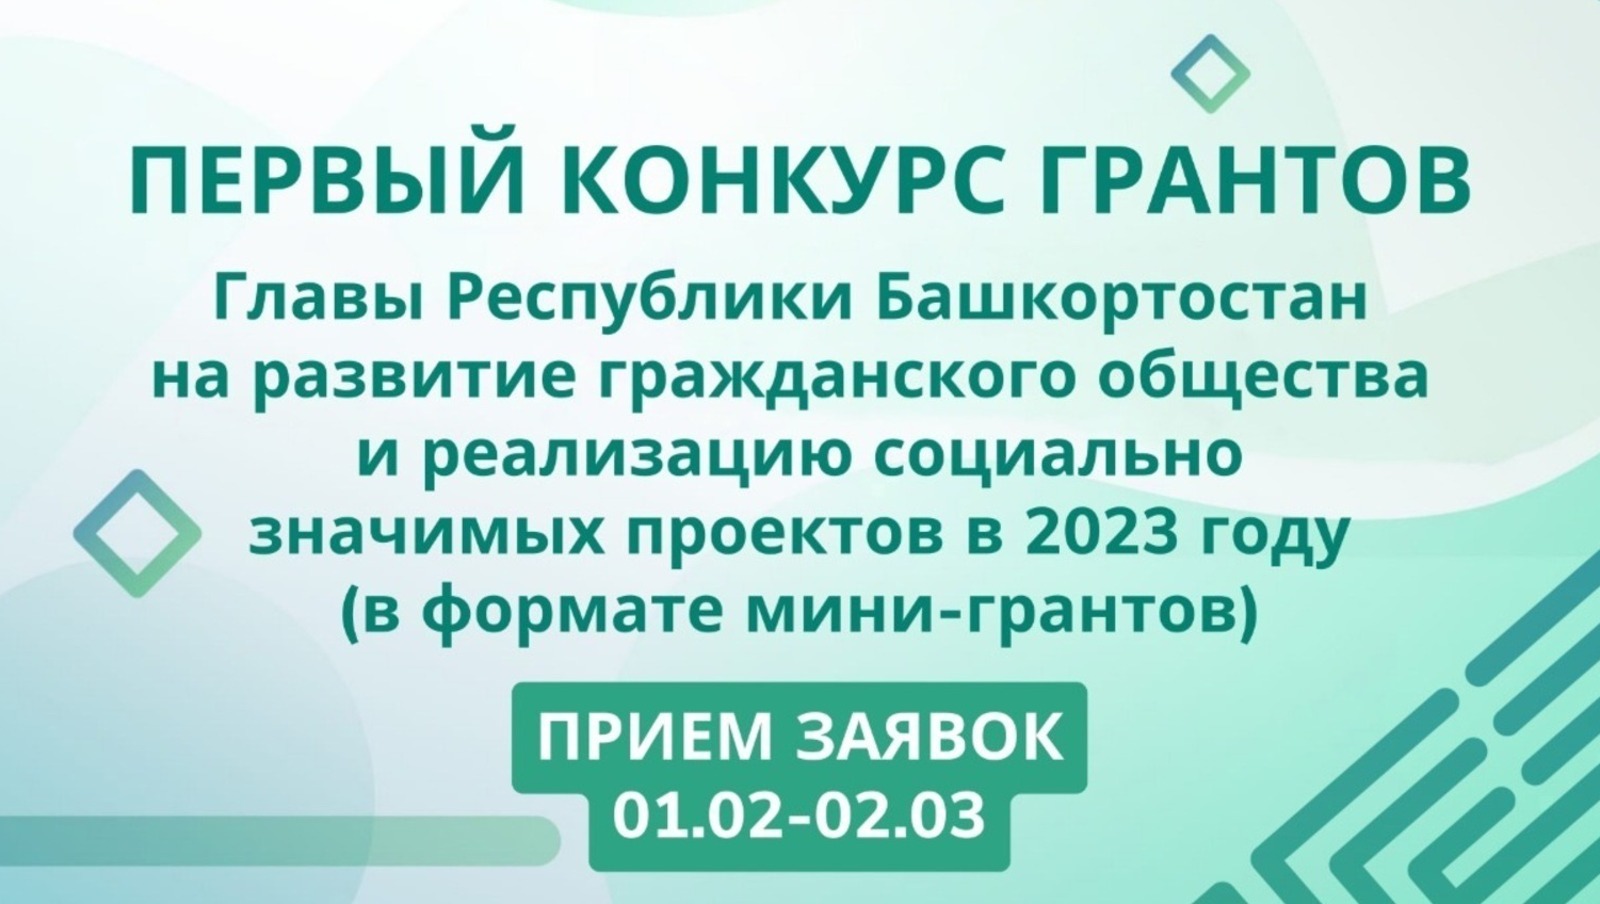 Как жителям Башкирии получить до полумиллиона рублей на реализацию своих проектов